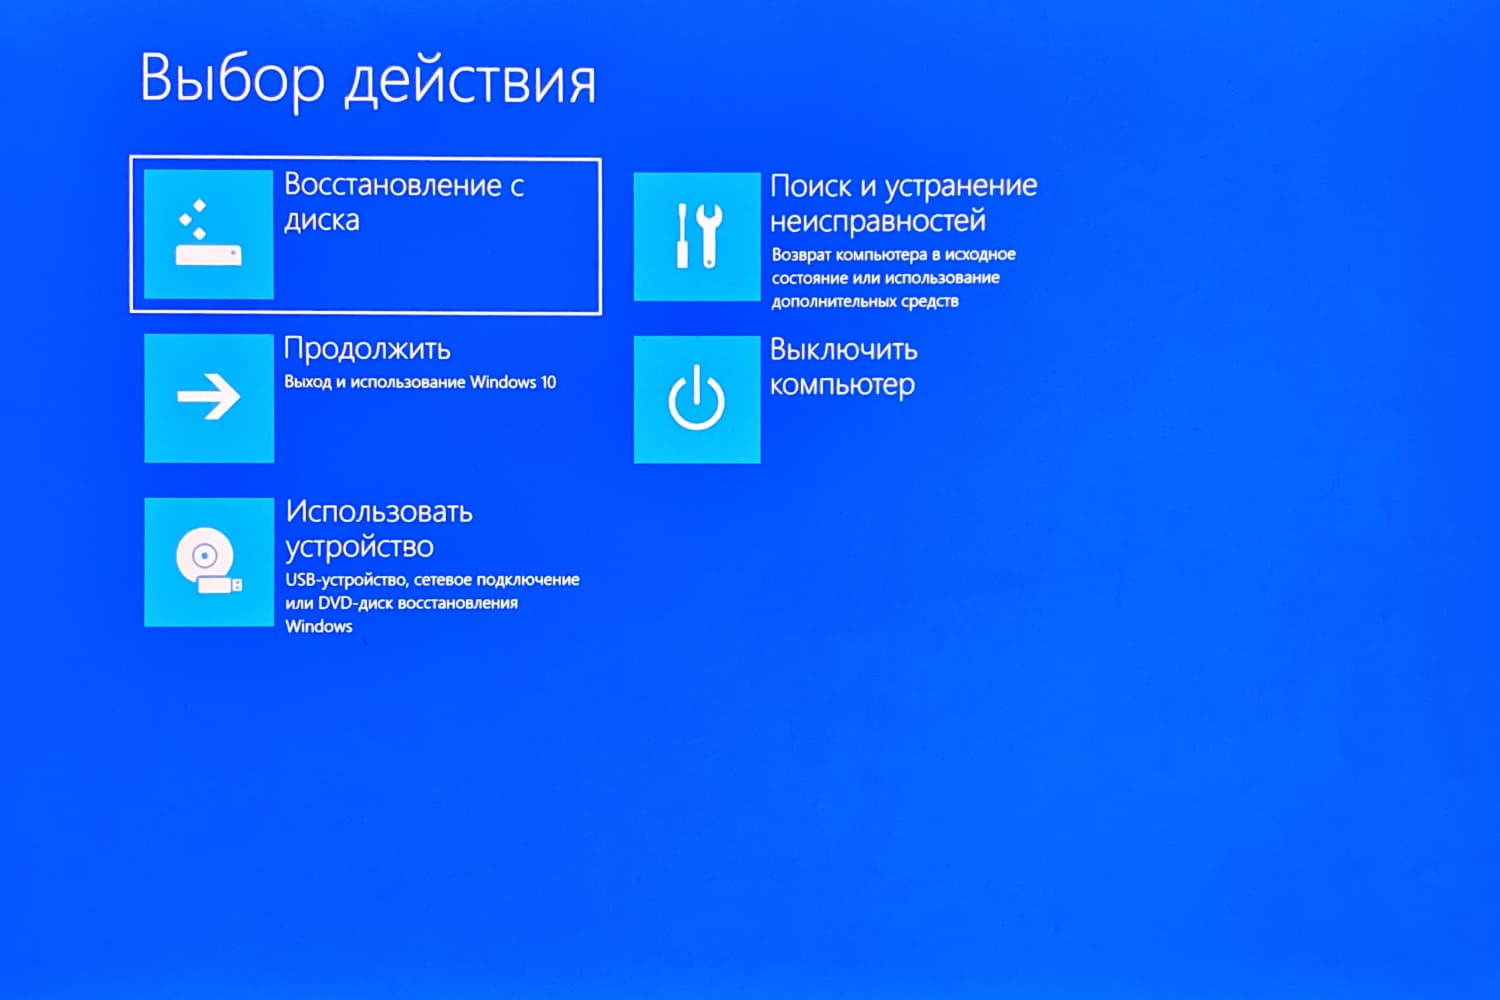 Об аварийном диске восстановления Windows 10: суть, процесс создания, применение для восстановления системы Статья иллюстрирована скриншотами